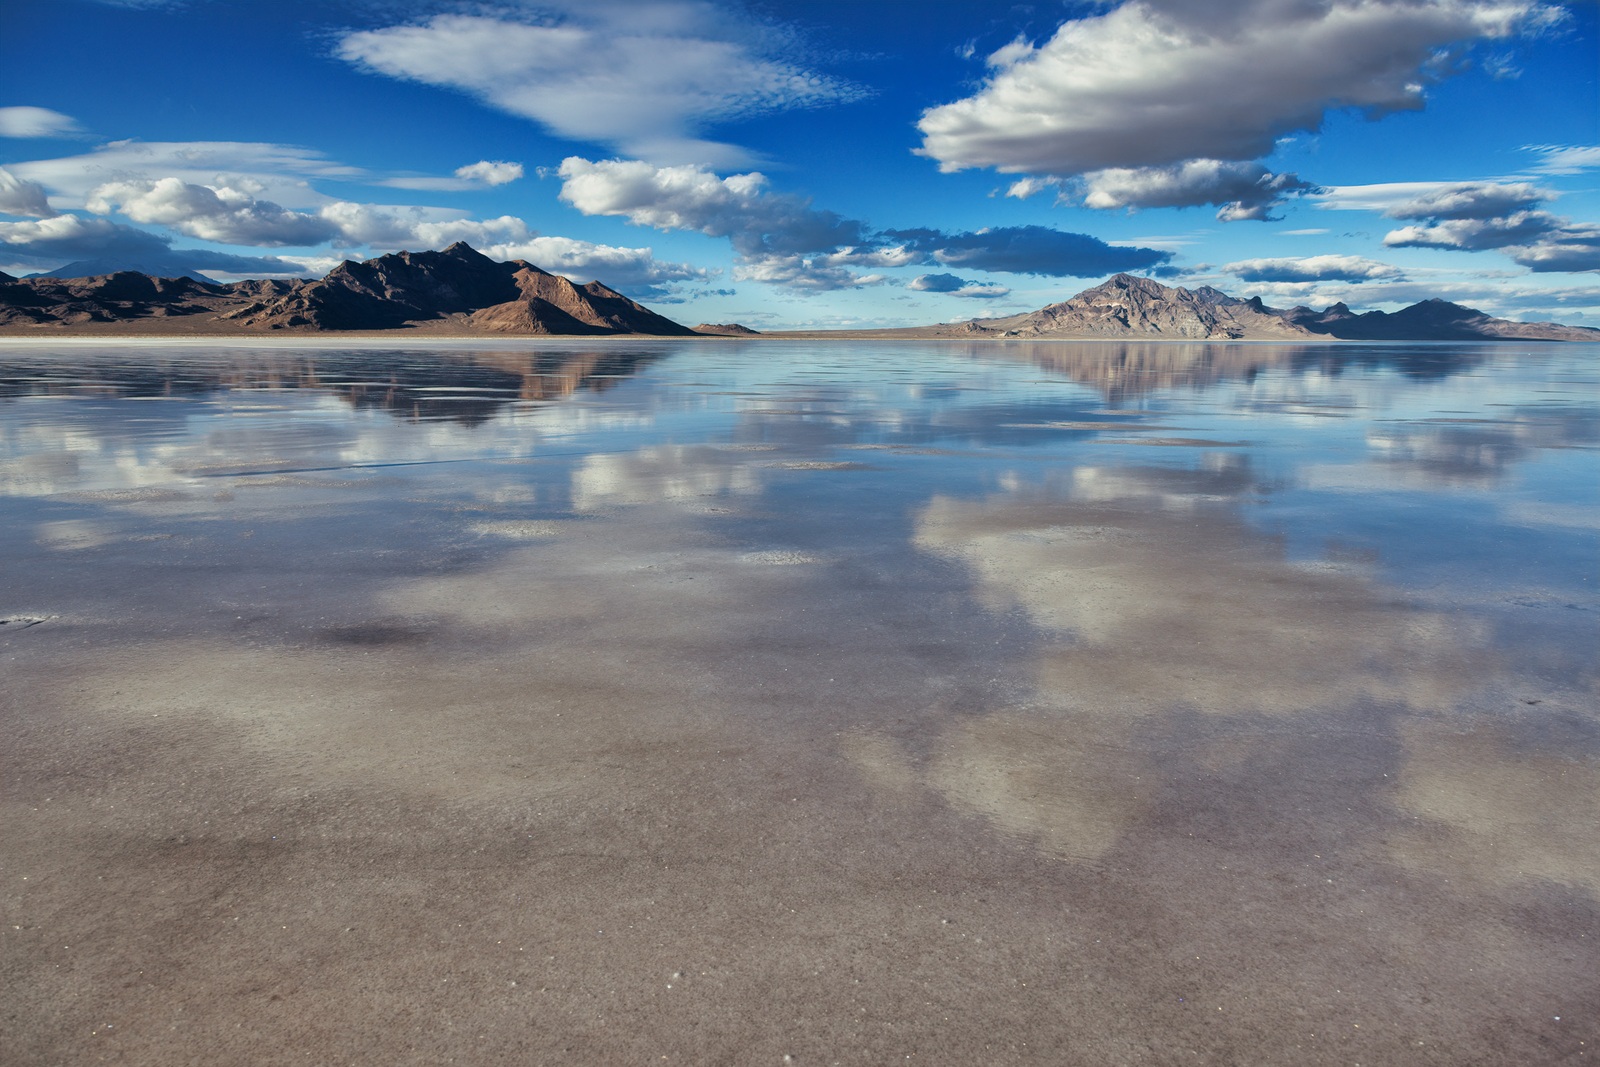 Image of Bonneville Salt Flats by Karen Schmautz